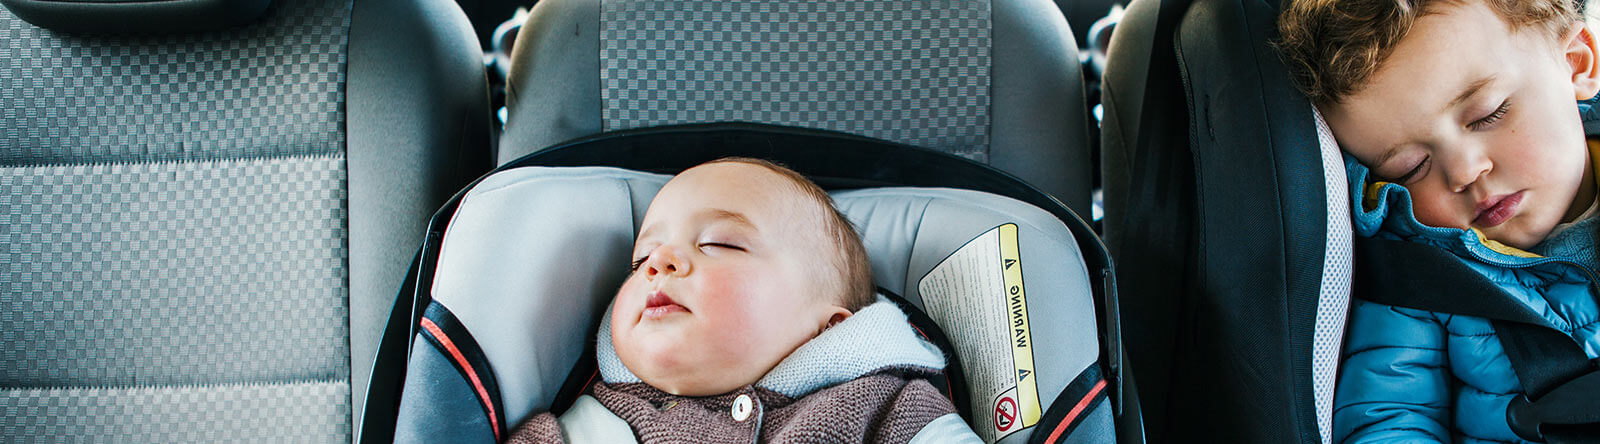 Carrinho De Bebê Tendência E Cadeira De Carro Como Prender